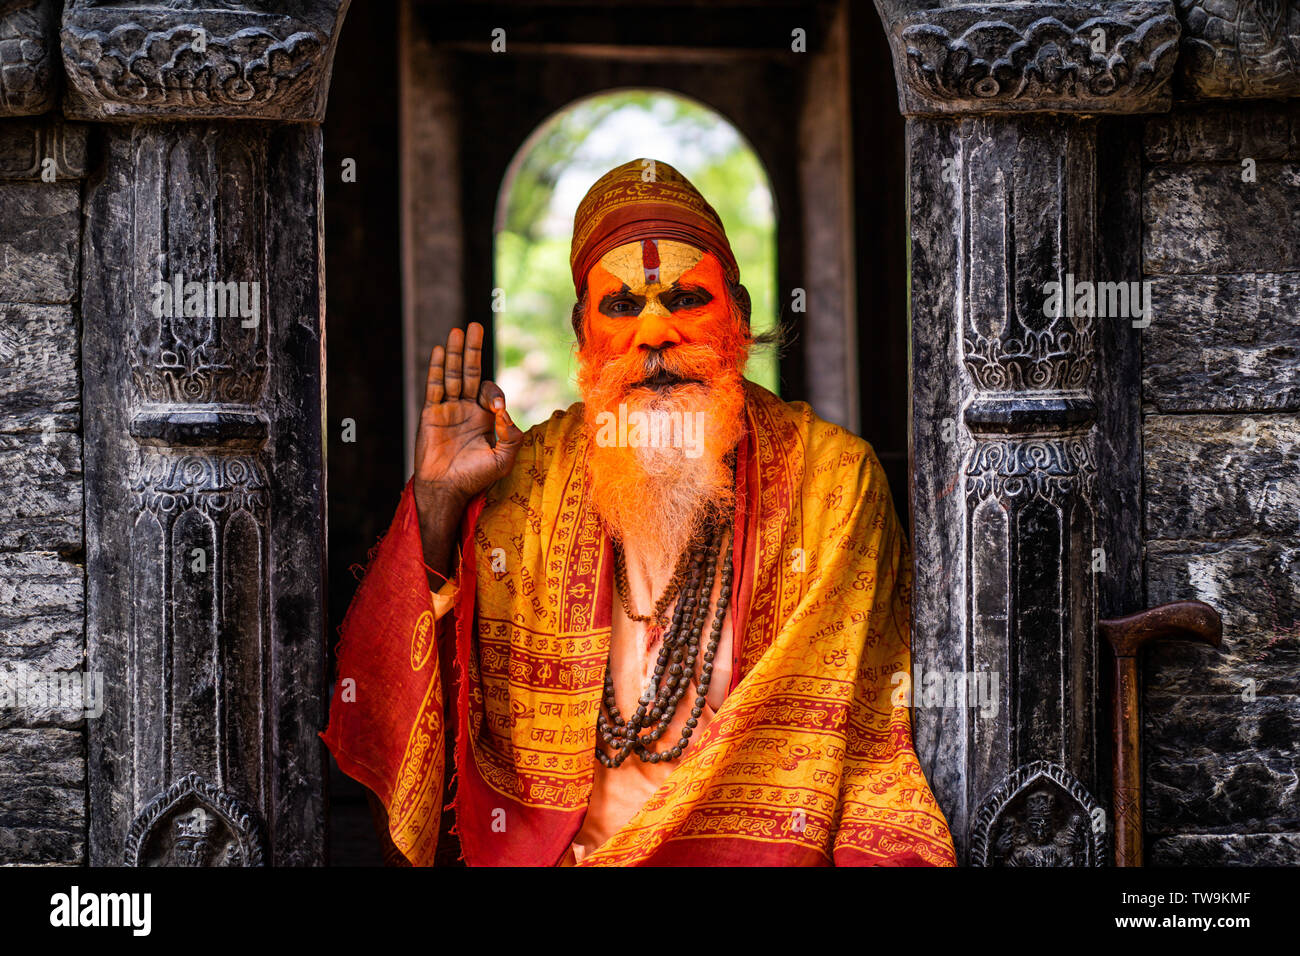 Sadhu ou saint homme au temple de Pashupatinath temple complexe à Katmandou, au Népal. Sadhus renoncent à toute vie mondaine pour suivre chemin de discipline spirituelle Banque D'Images